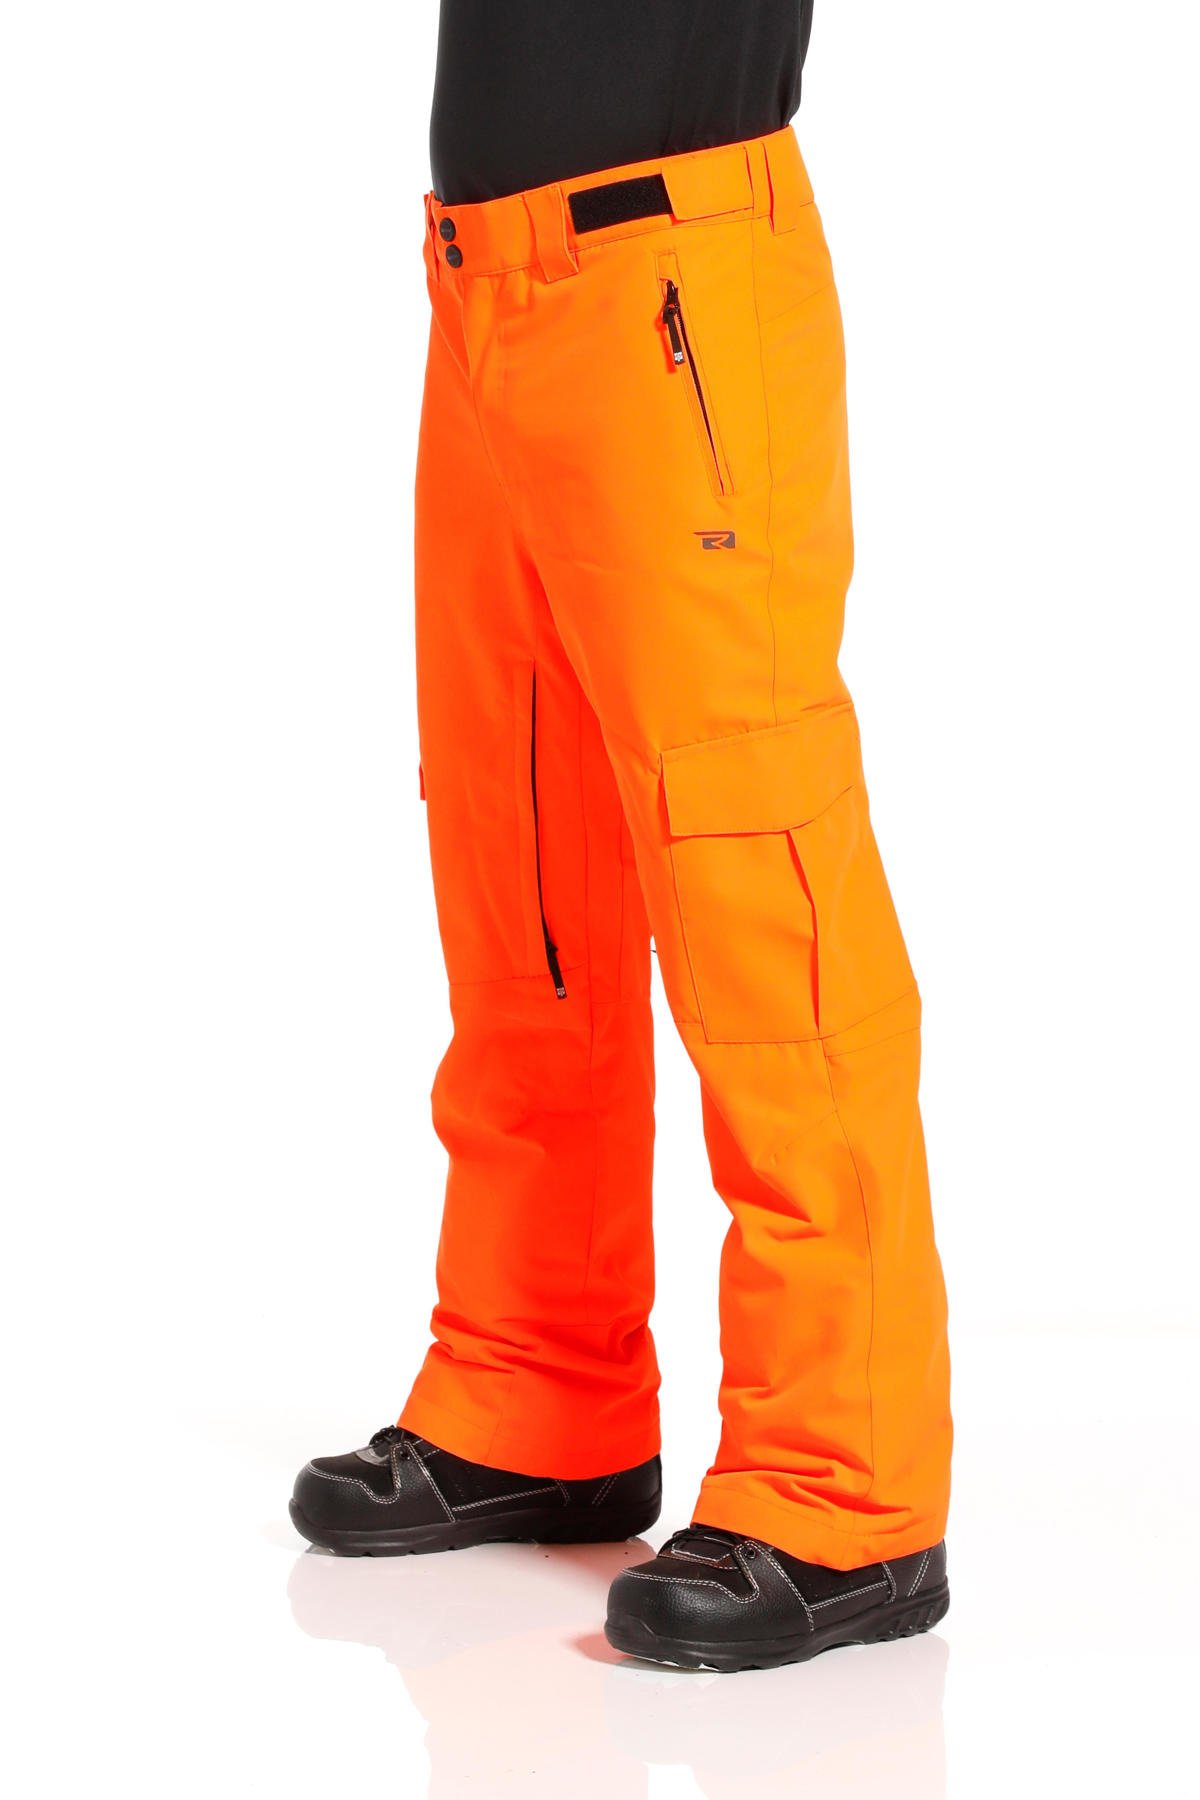 Parel marionet lekkage Rehall skibroek Buster oranje | wehkamp